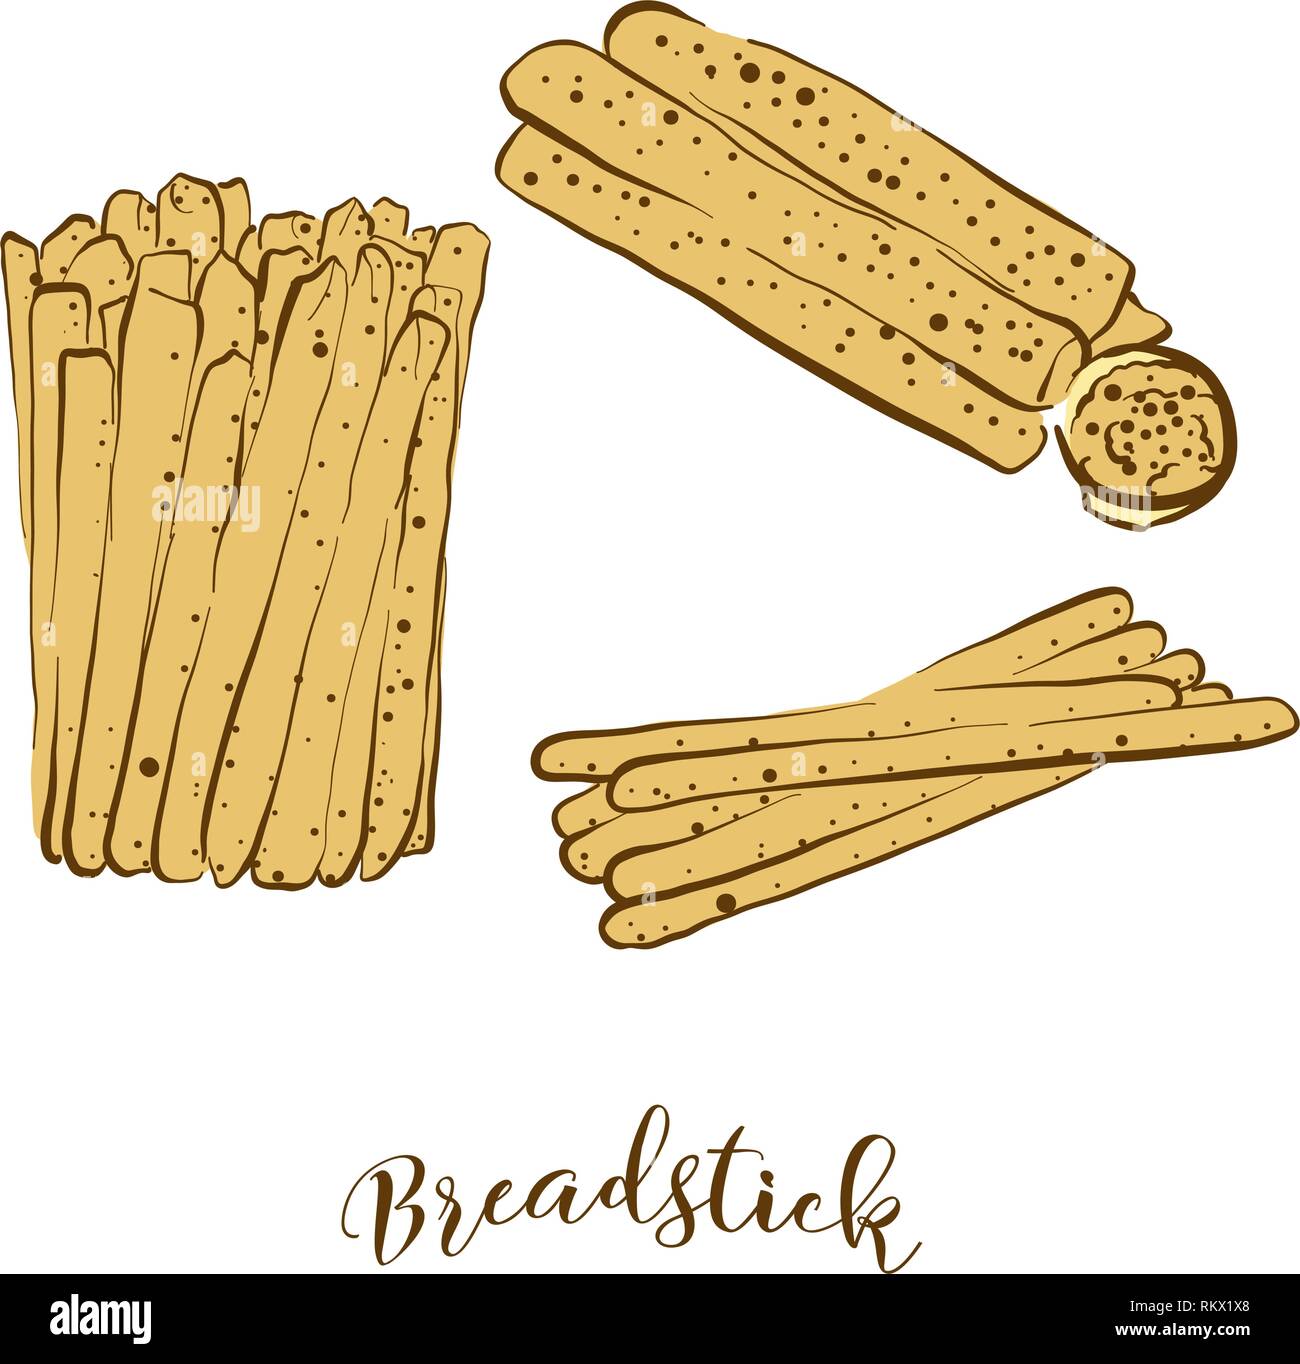 Farbige Skizzen von breadstick Brot. Vektor Zeichnung von trocken Brot essen, in der Regel in Italien bekannt. Farbige Brot Abbildung Serie. Stock Vektor